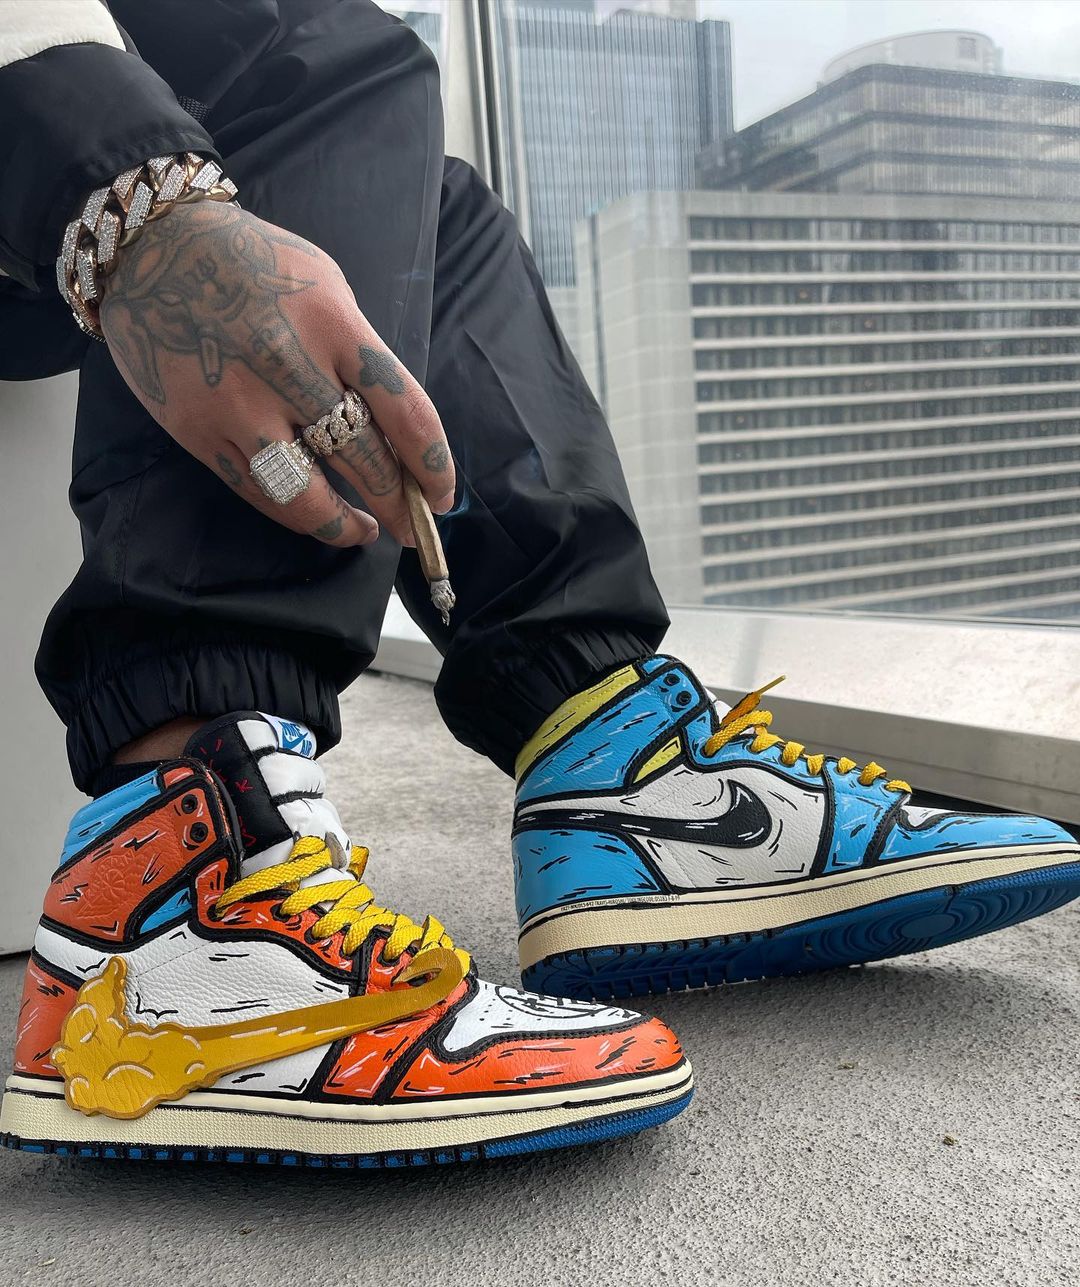 Ambiguo bombilla Lío Anuel AA presume sus nuevas zapatillas en Instagram: Están inspirados en la  serie "Dragon Ball" - Meganoticias